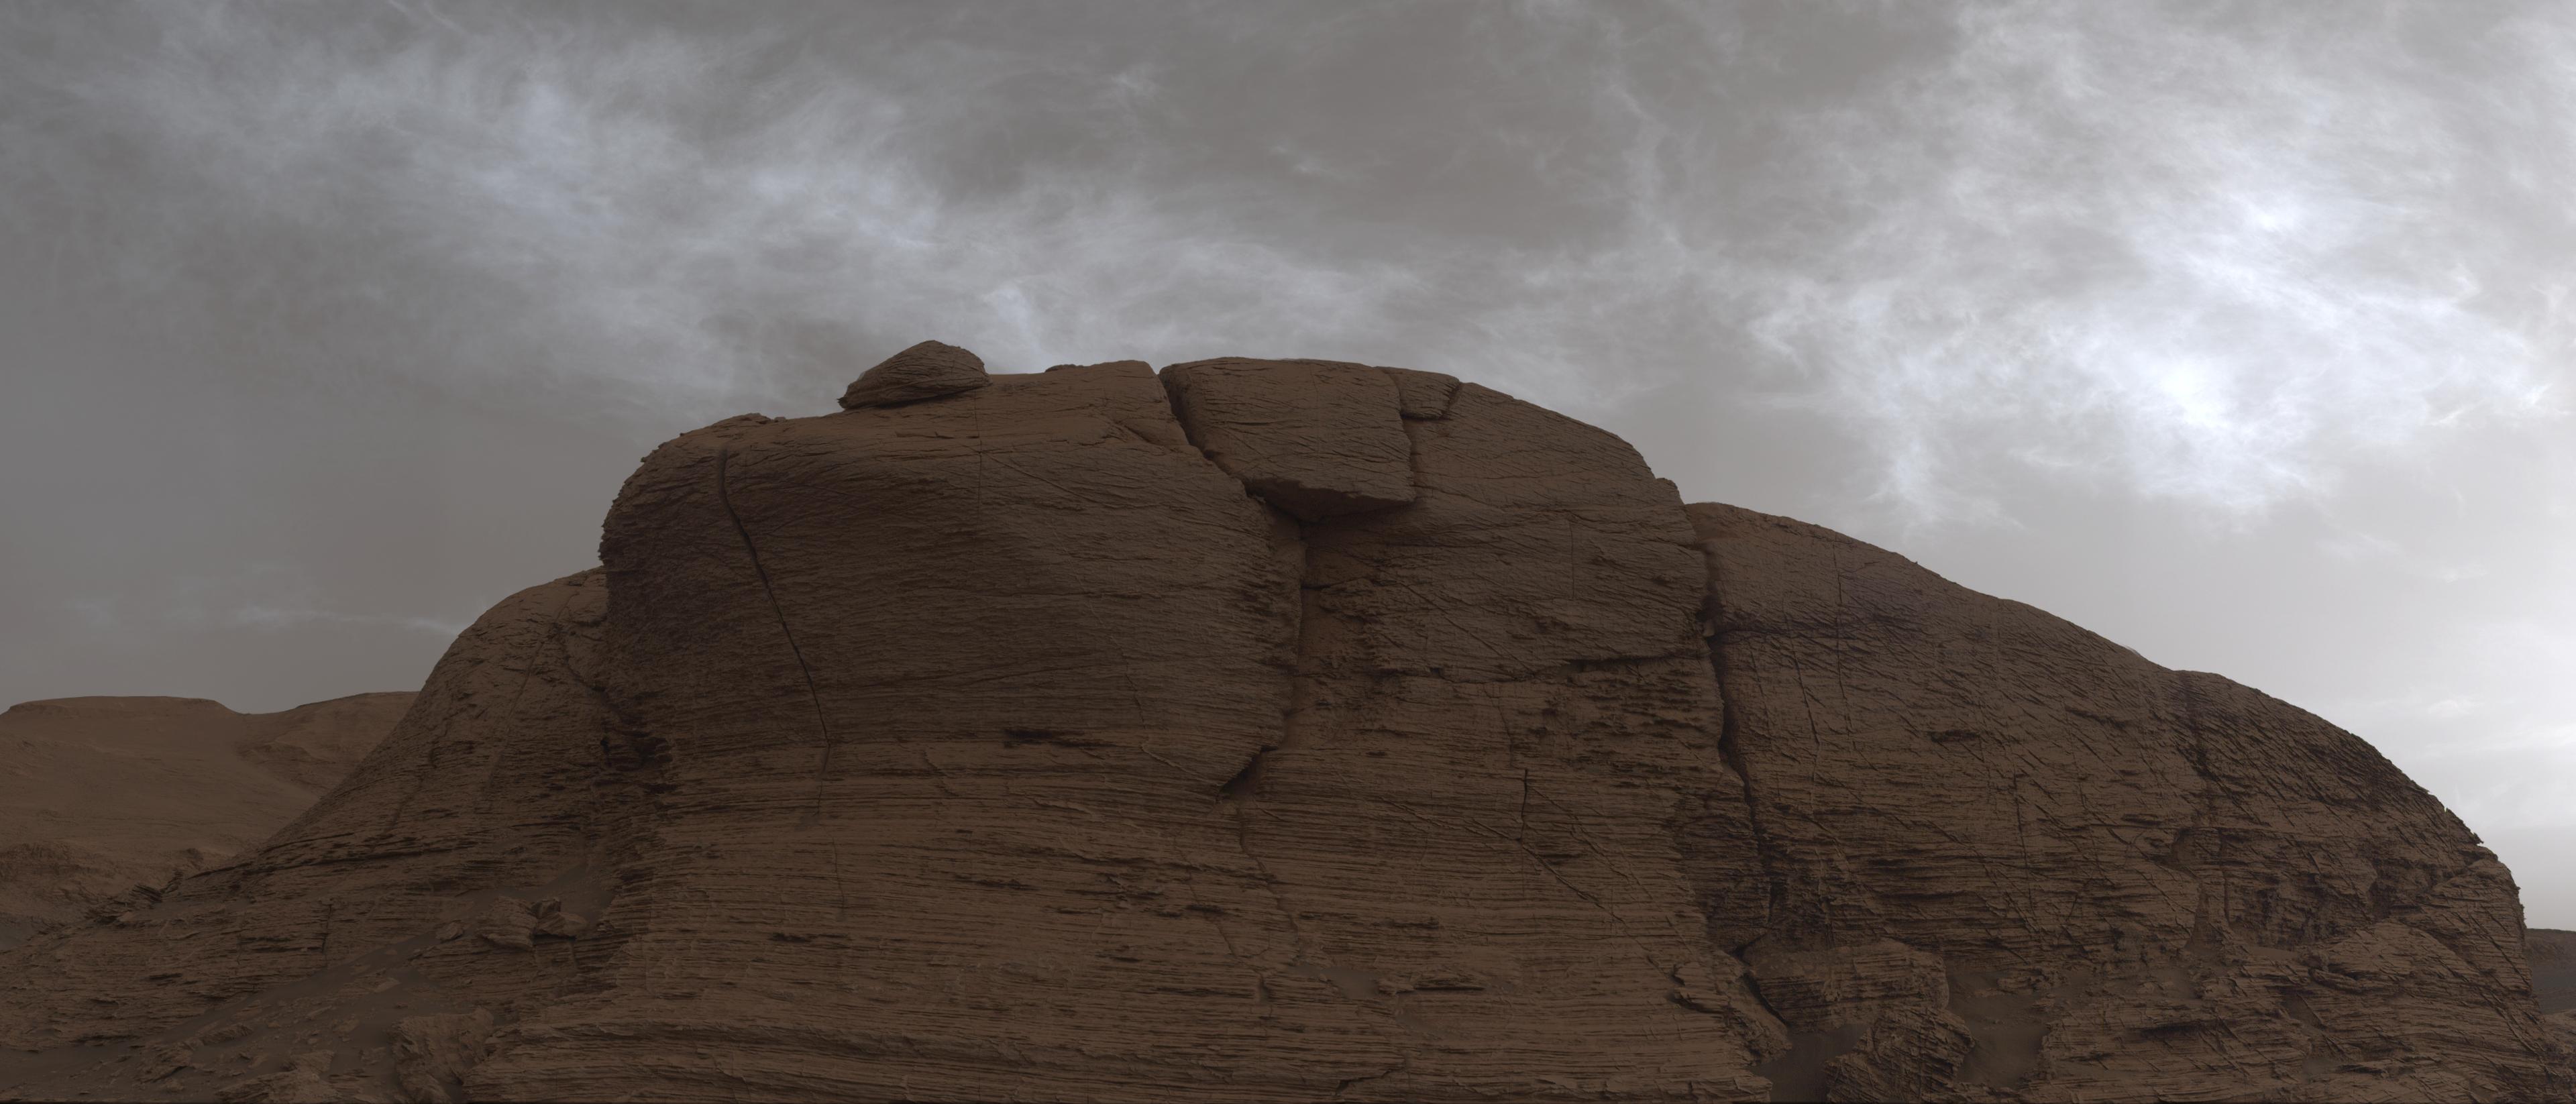 وجه جبل مرّيخي متعدّد الطبقات تظهر عليه آثار التجوية وتتألّق من فوقه السحب عاكسةً ضوء الشمس التي غابت للتو.